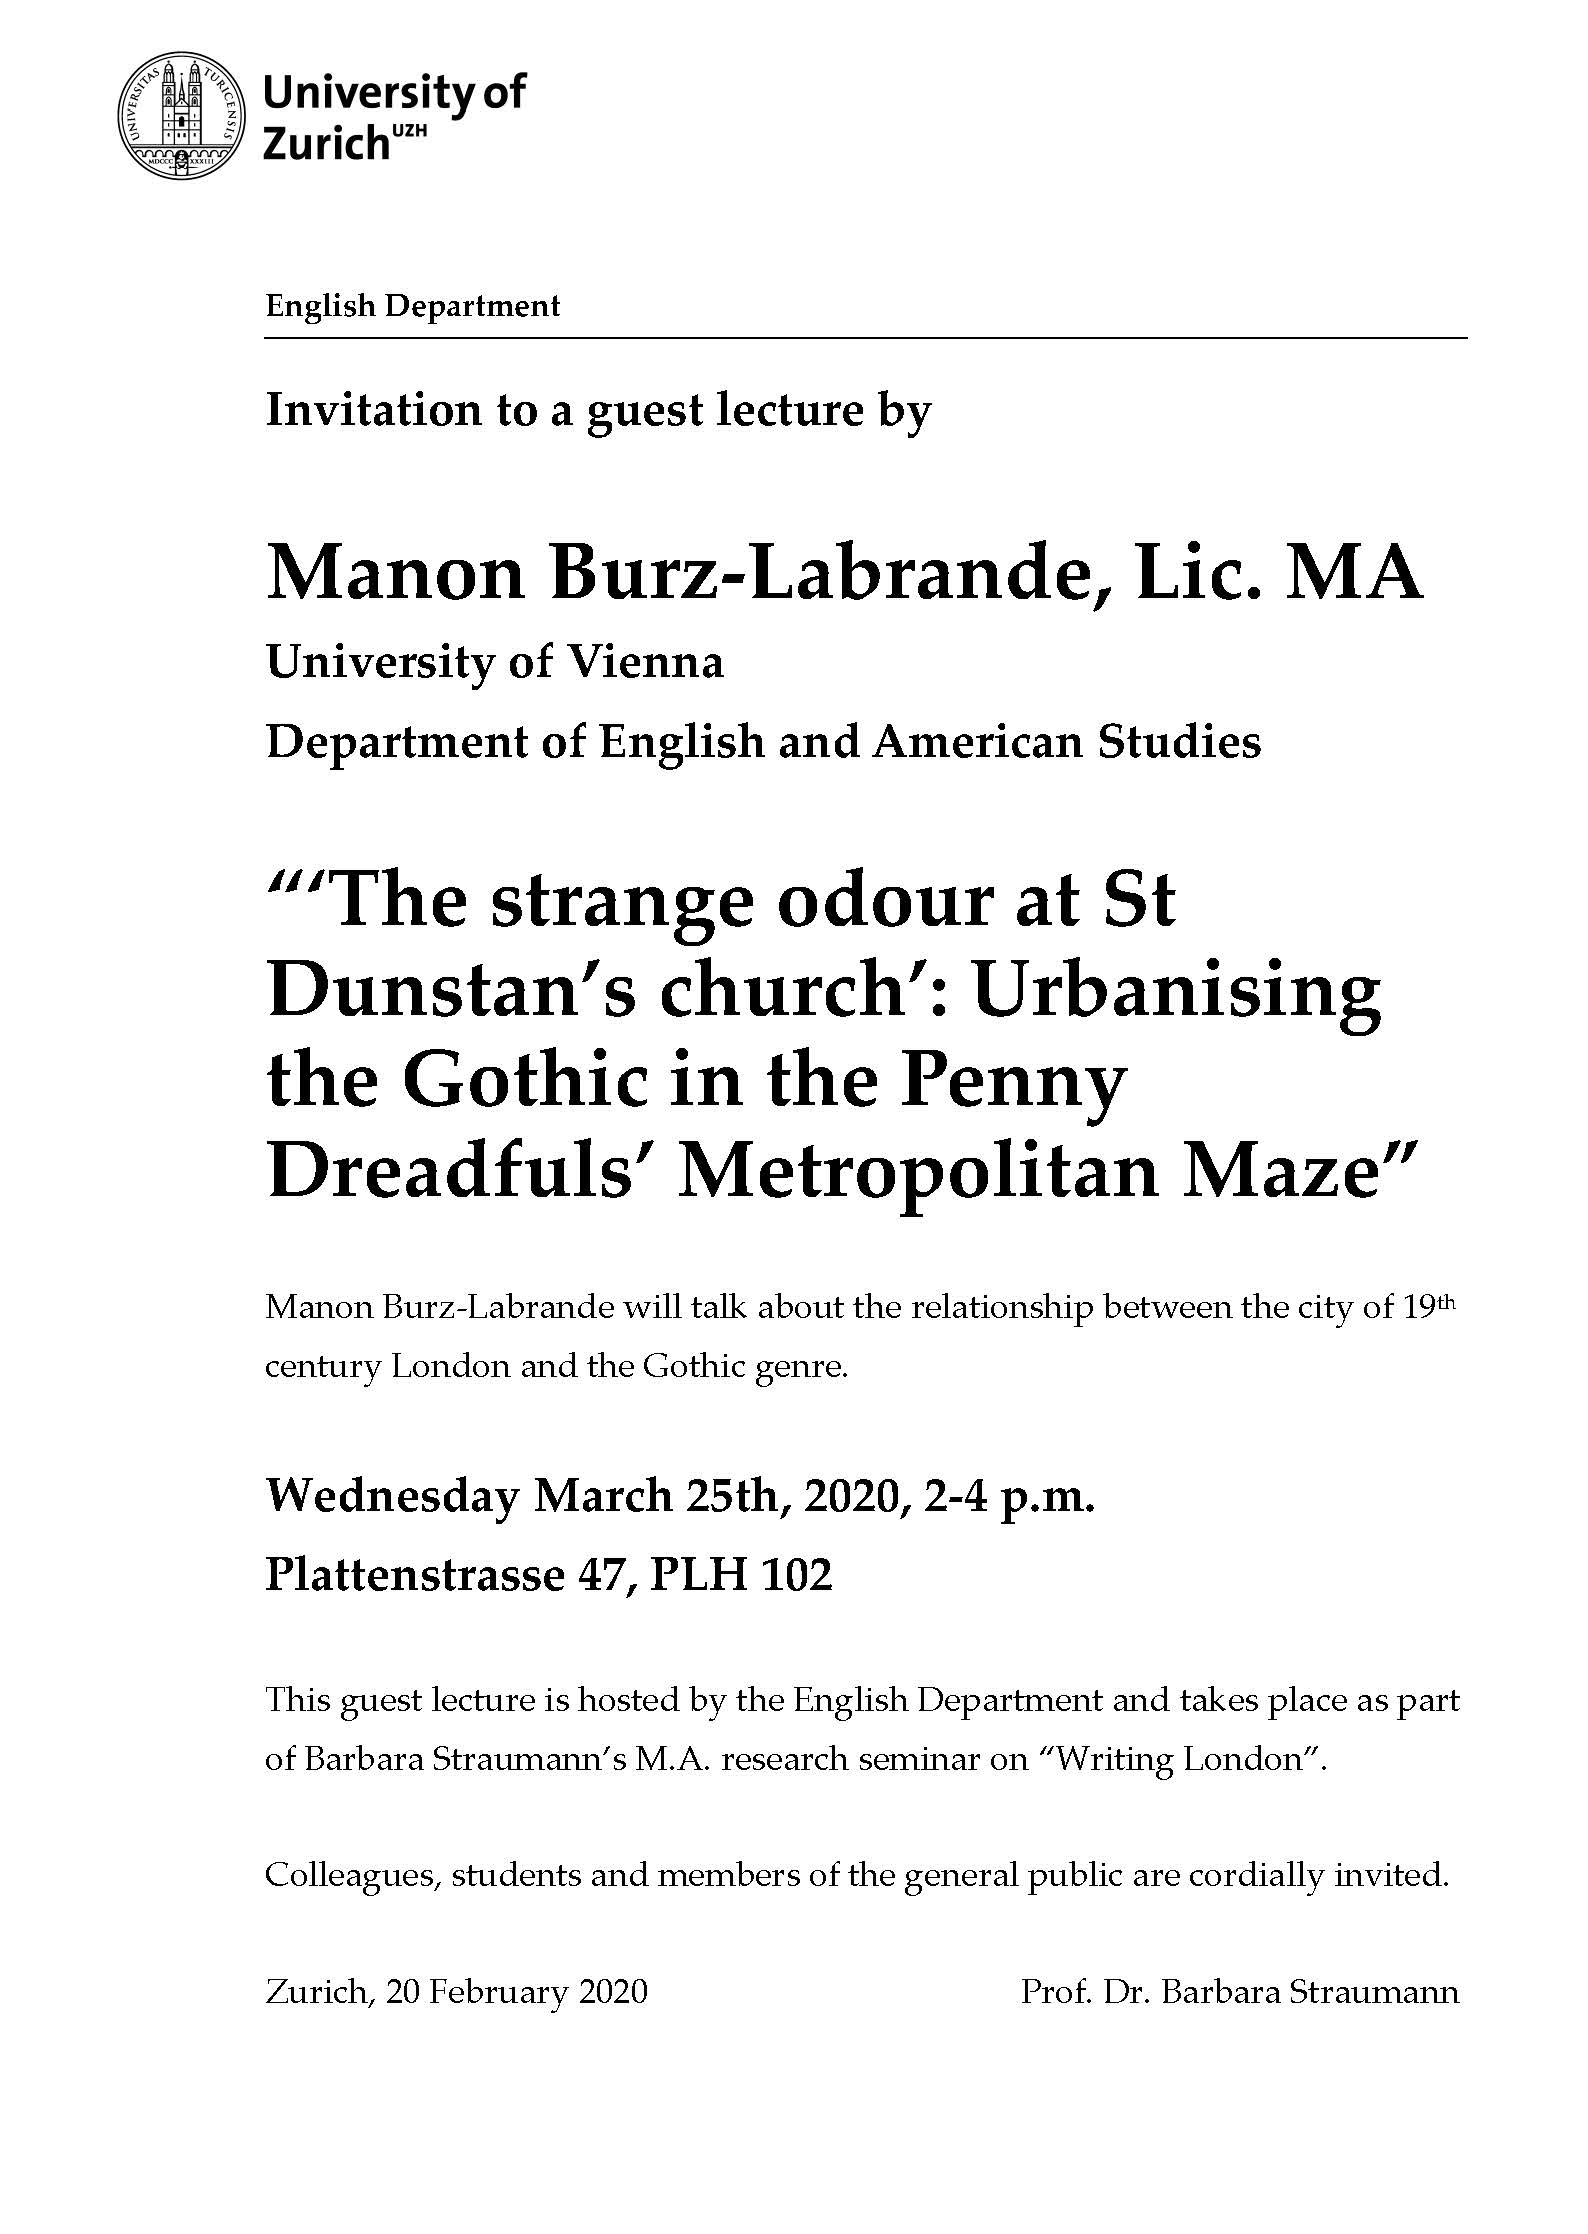 Guest Lecture by Manon Burz-Labrande, Lic. MA